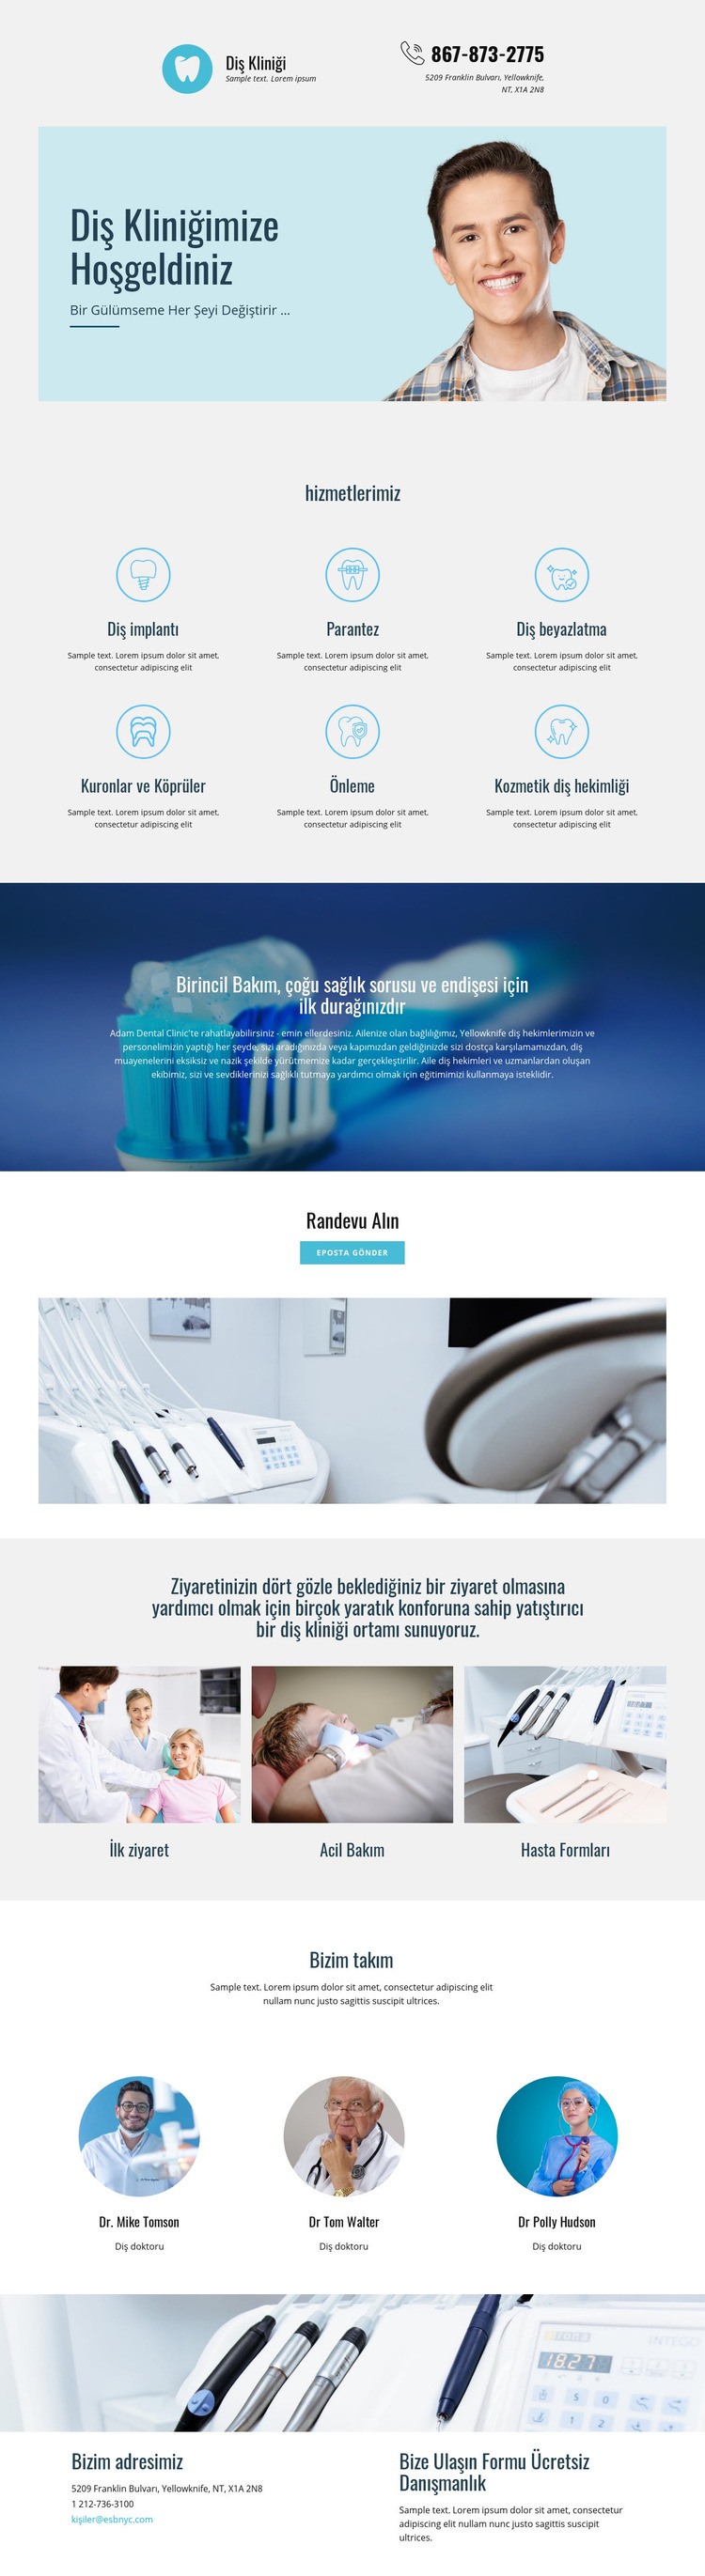 Diş hekimliği kliniği Web Sitesi Mockup'ı